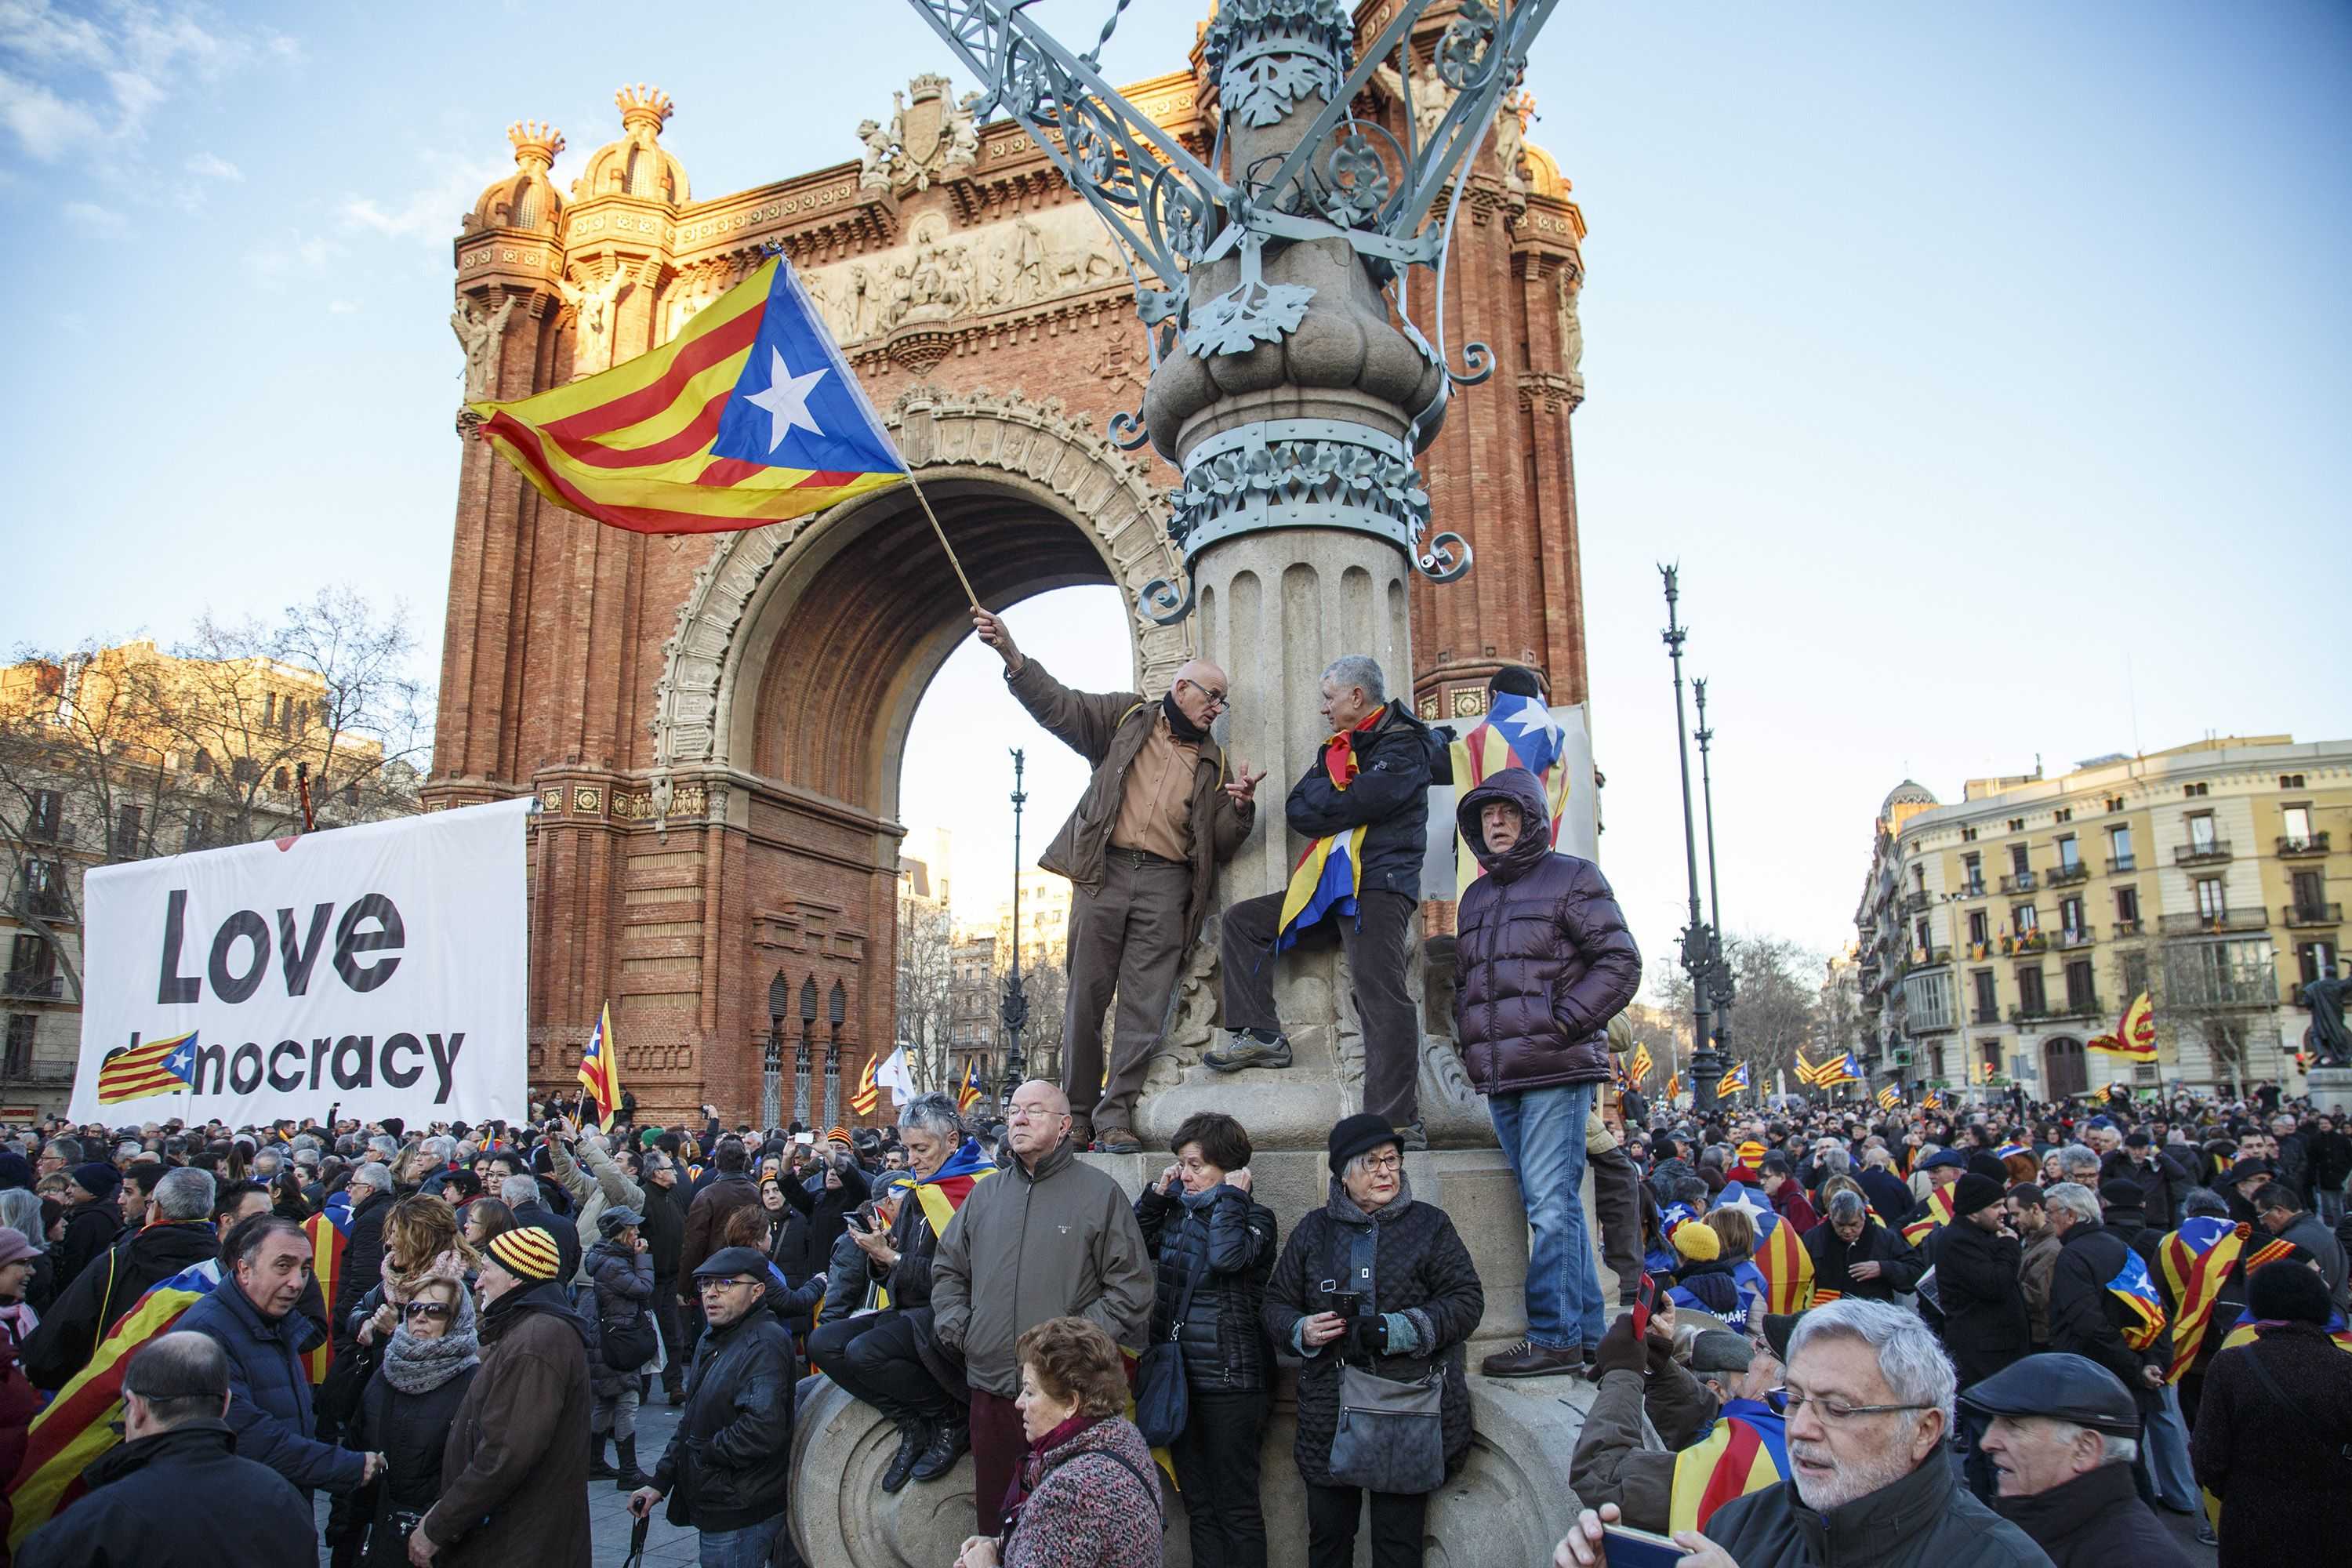 Un professor alemany encapçala una petició a favor de l'autodeterminació de Catalunya